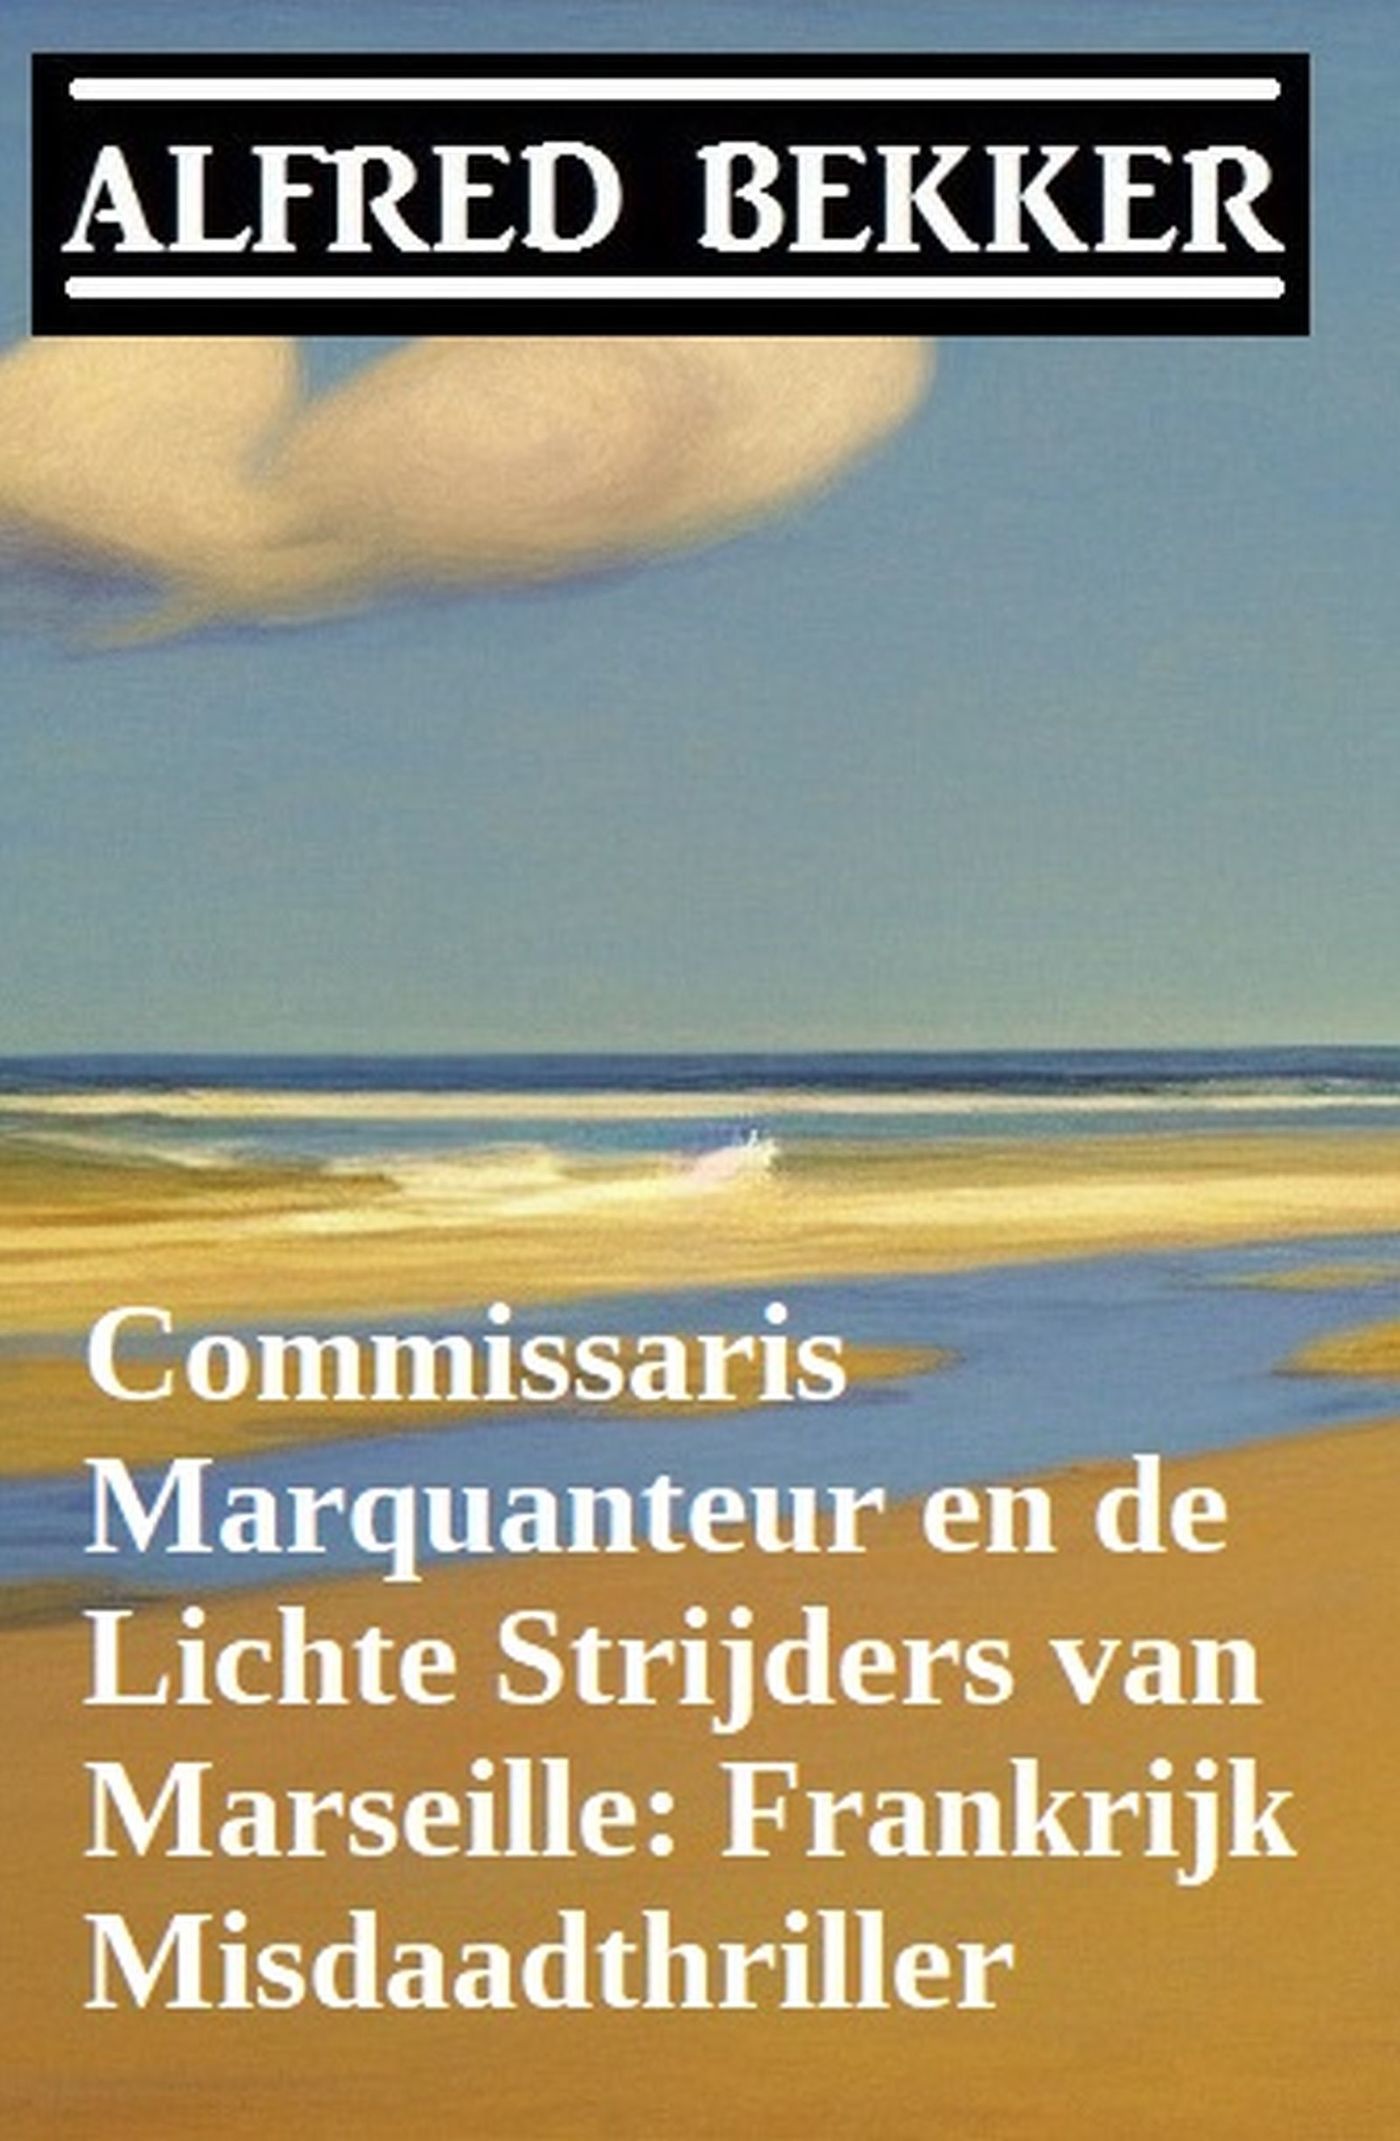 Bekker, Alfred - Commissaris Marquanteur en de lichte strijders van Marseille